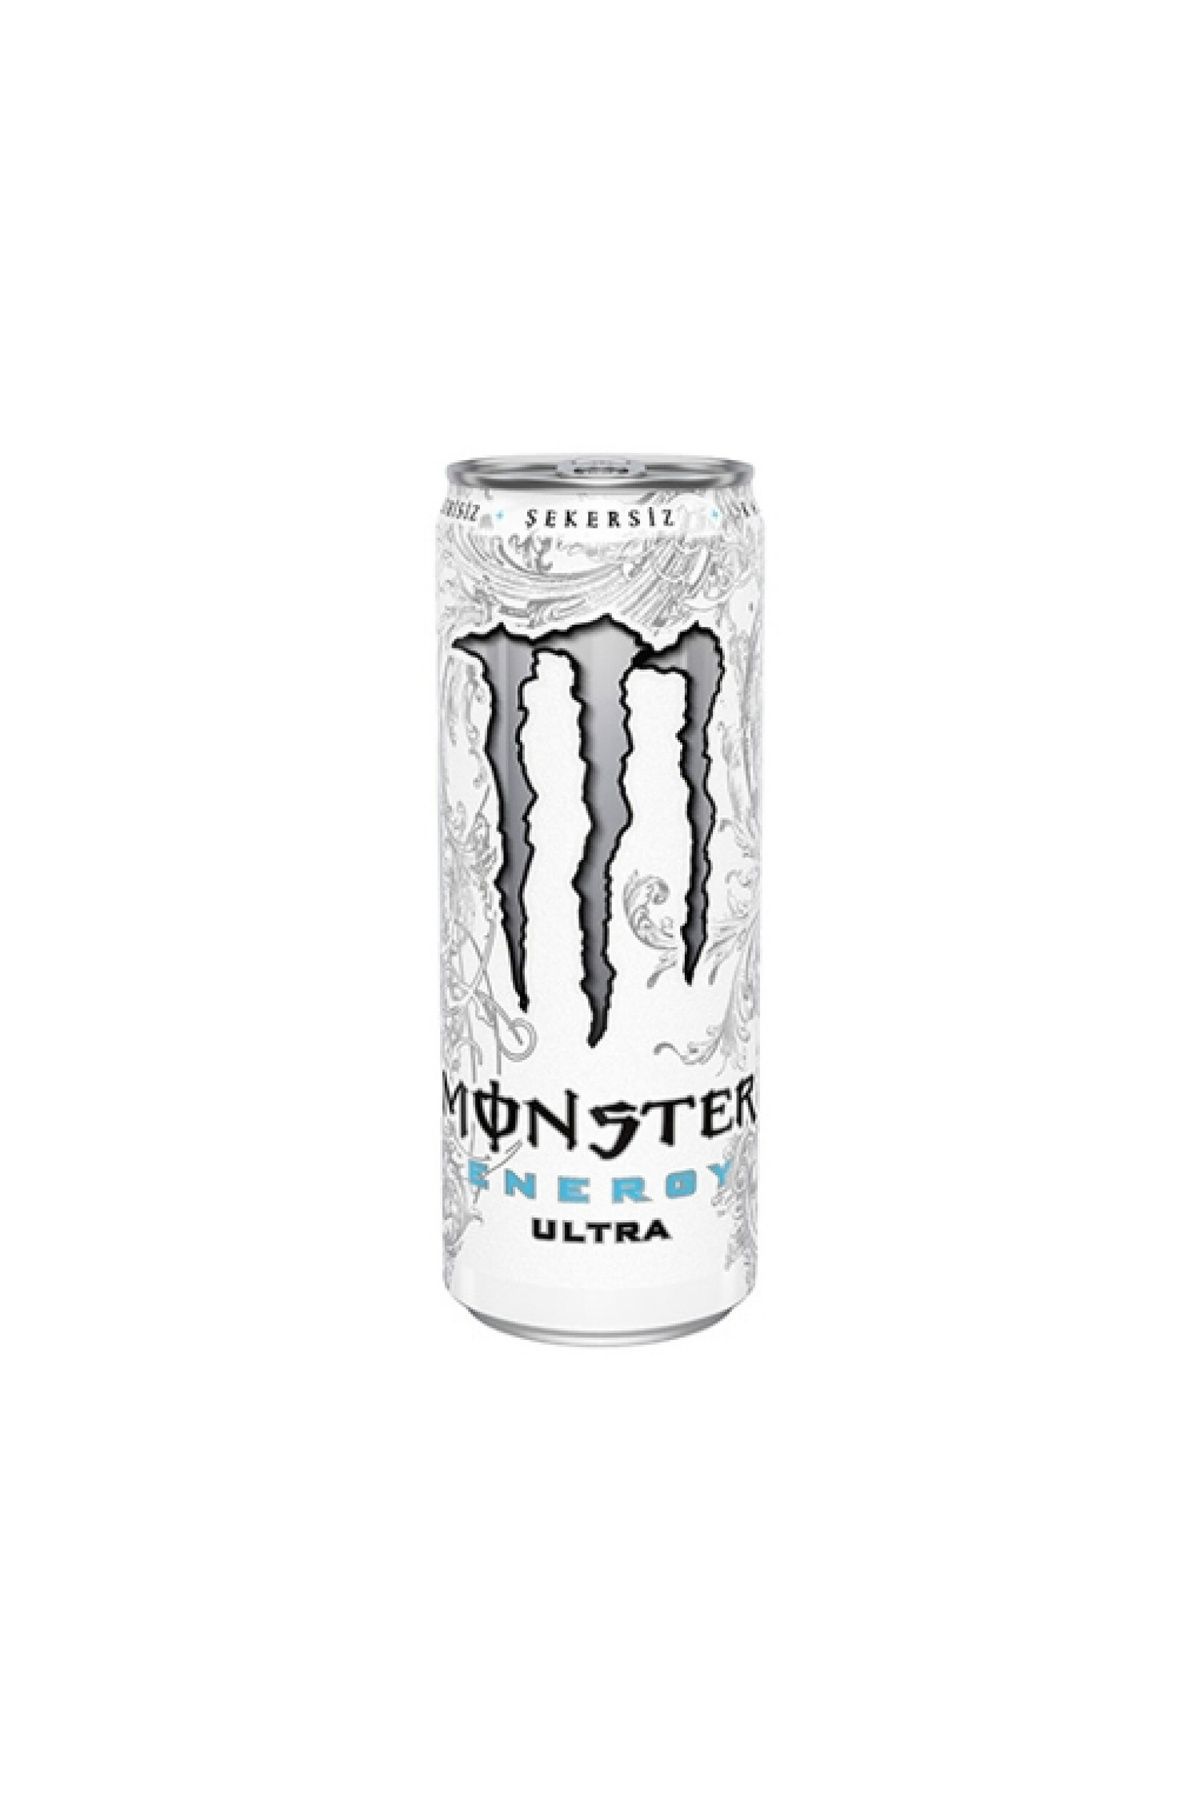 Monster Energy Monster Beyaz Enerji Tnk. 500 Ml. (6'LI)